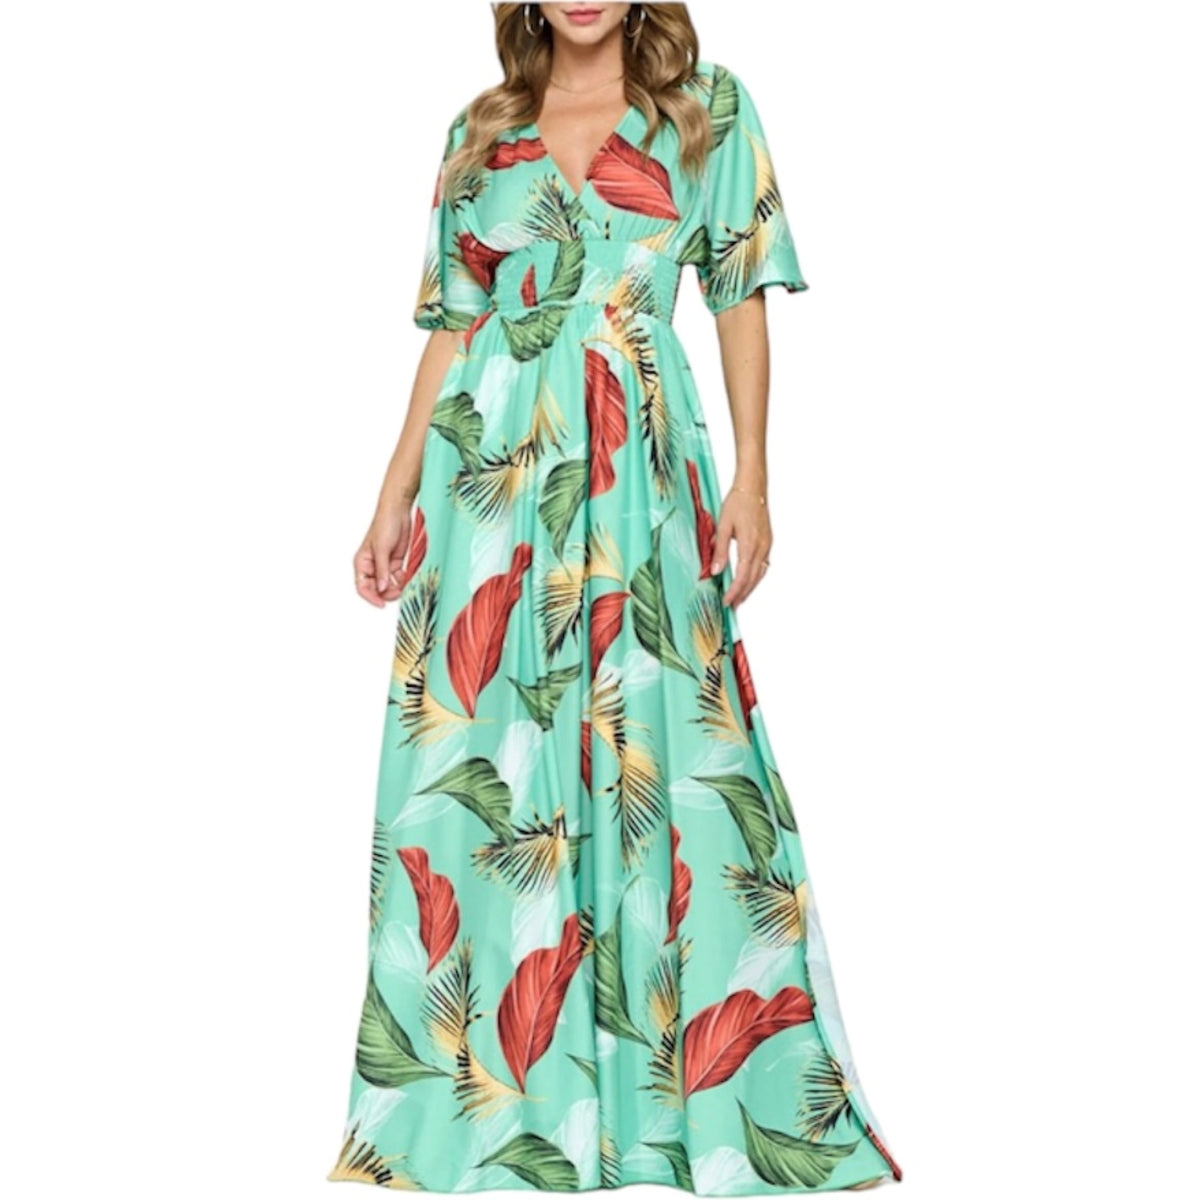 Rehaussez votre style avec notre robe tropicale longue ! Des grosses feuilles sur un fond vert, cette robe vous transportera instantanément sous les tropiques. Profitez des degrés de confort et de légèreté grâce à sa matière de qualité supérieure. Un incontournable pour une tenue estivale élégante et décontractée.